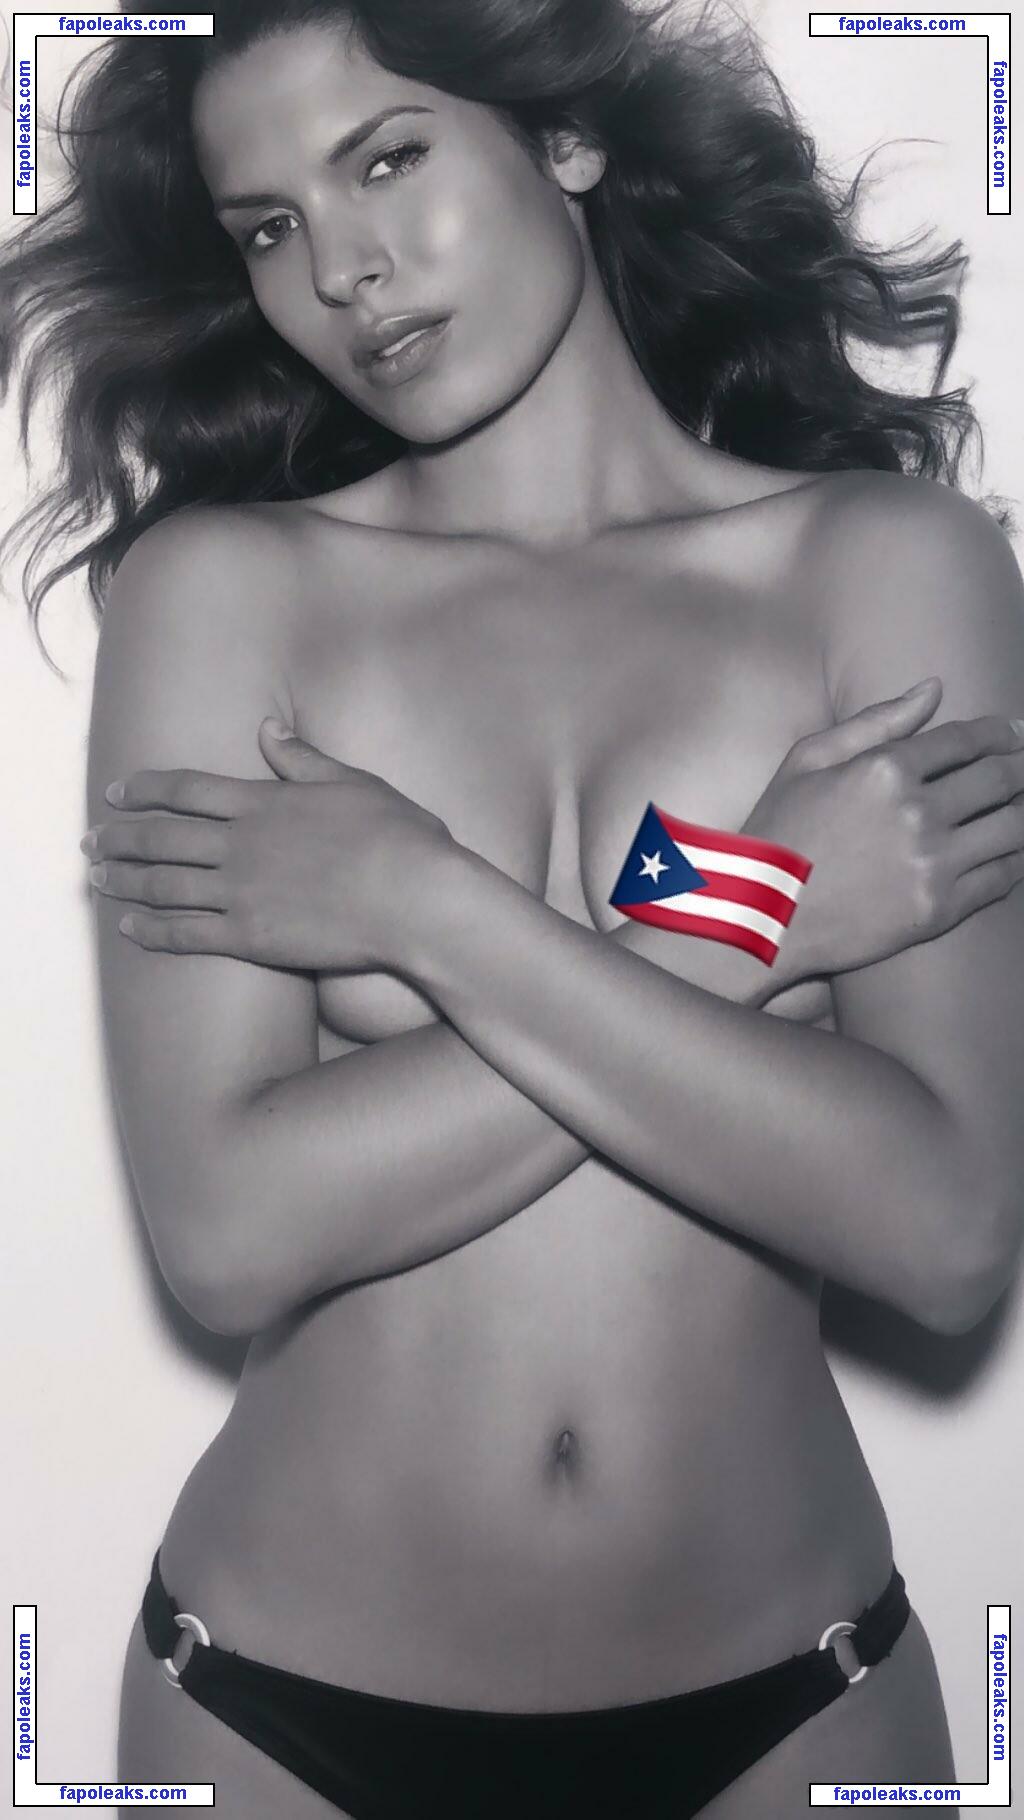 Nadine Velazquez / nadinevelazquez nude photo #0576 from OnlyFans